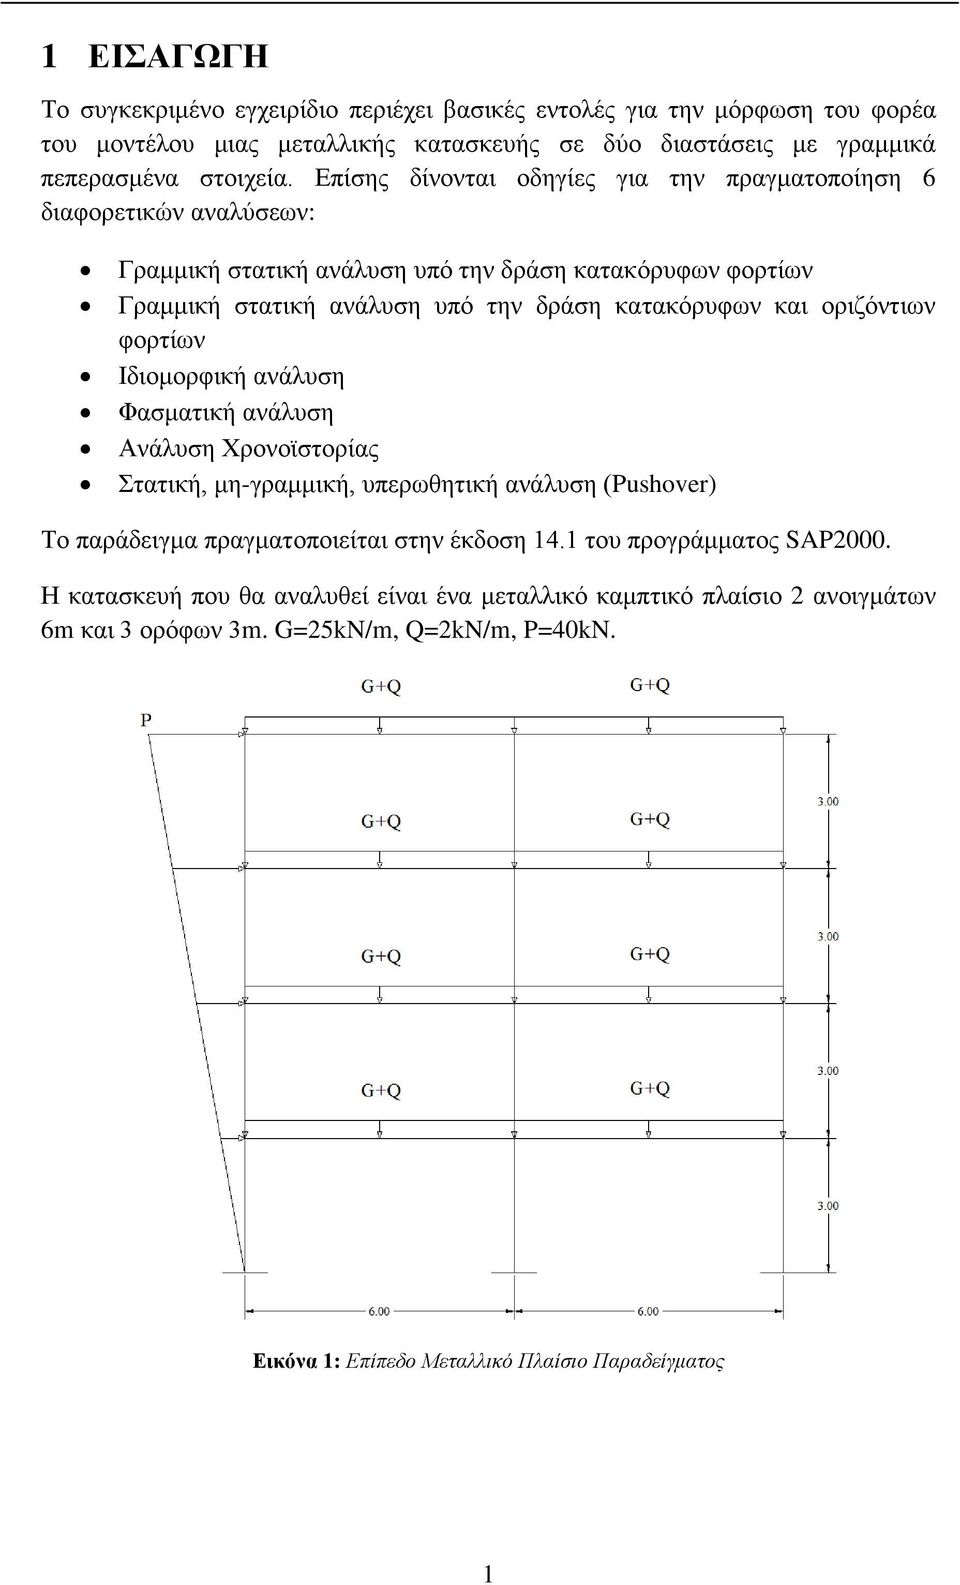 οριζόντιων φορτίων Ιδιομορφική ανάλυση Φασματική ανάλυση Ανάλυση Χρονοϊστορίας Στατική, μη-γραμμική, υπερωθητική ανάλυση (Pushover) Το παράδειγμα πραγματοποιείται στην έκδοση 14.